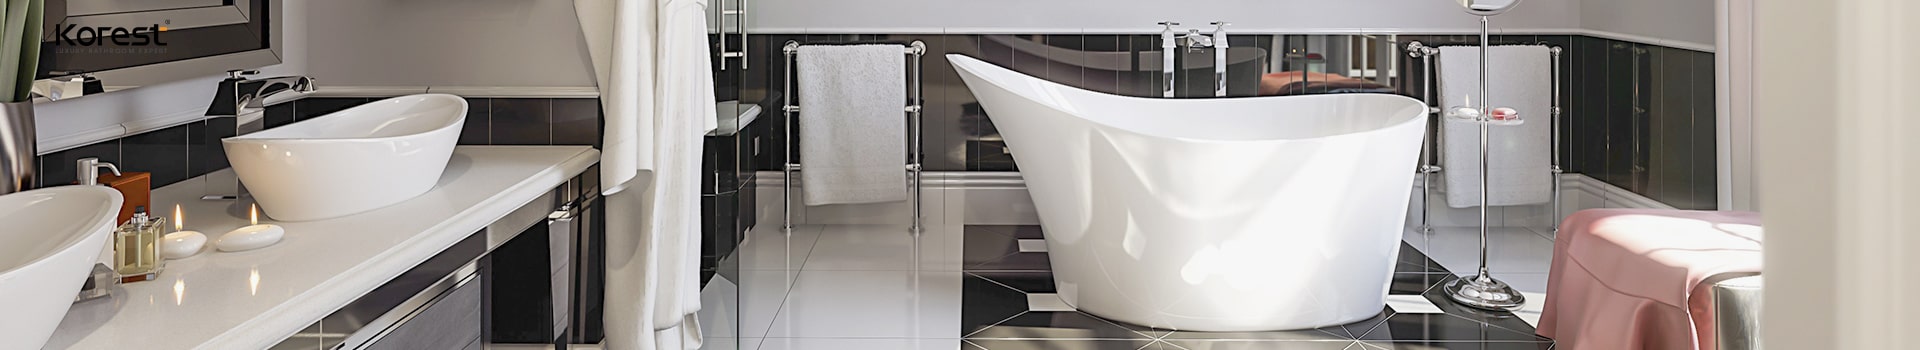 Bật mí các mẫu kệ lavabo đẹp bạn có thể tham khảo và sử dụng trong phòng tắm